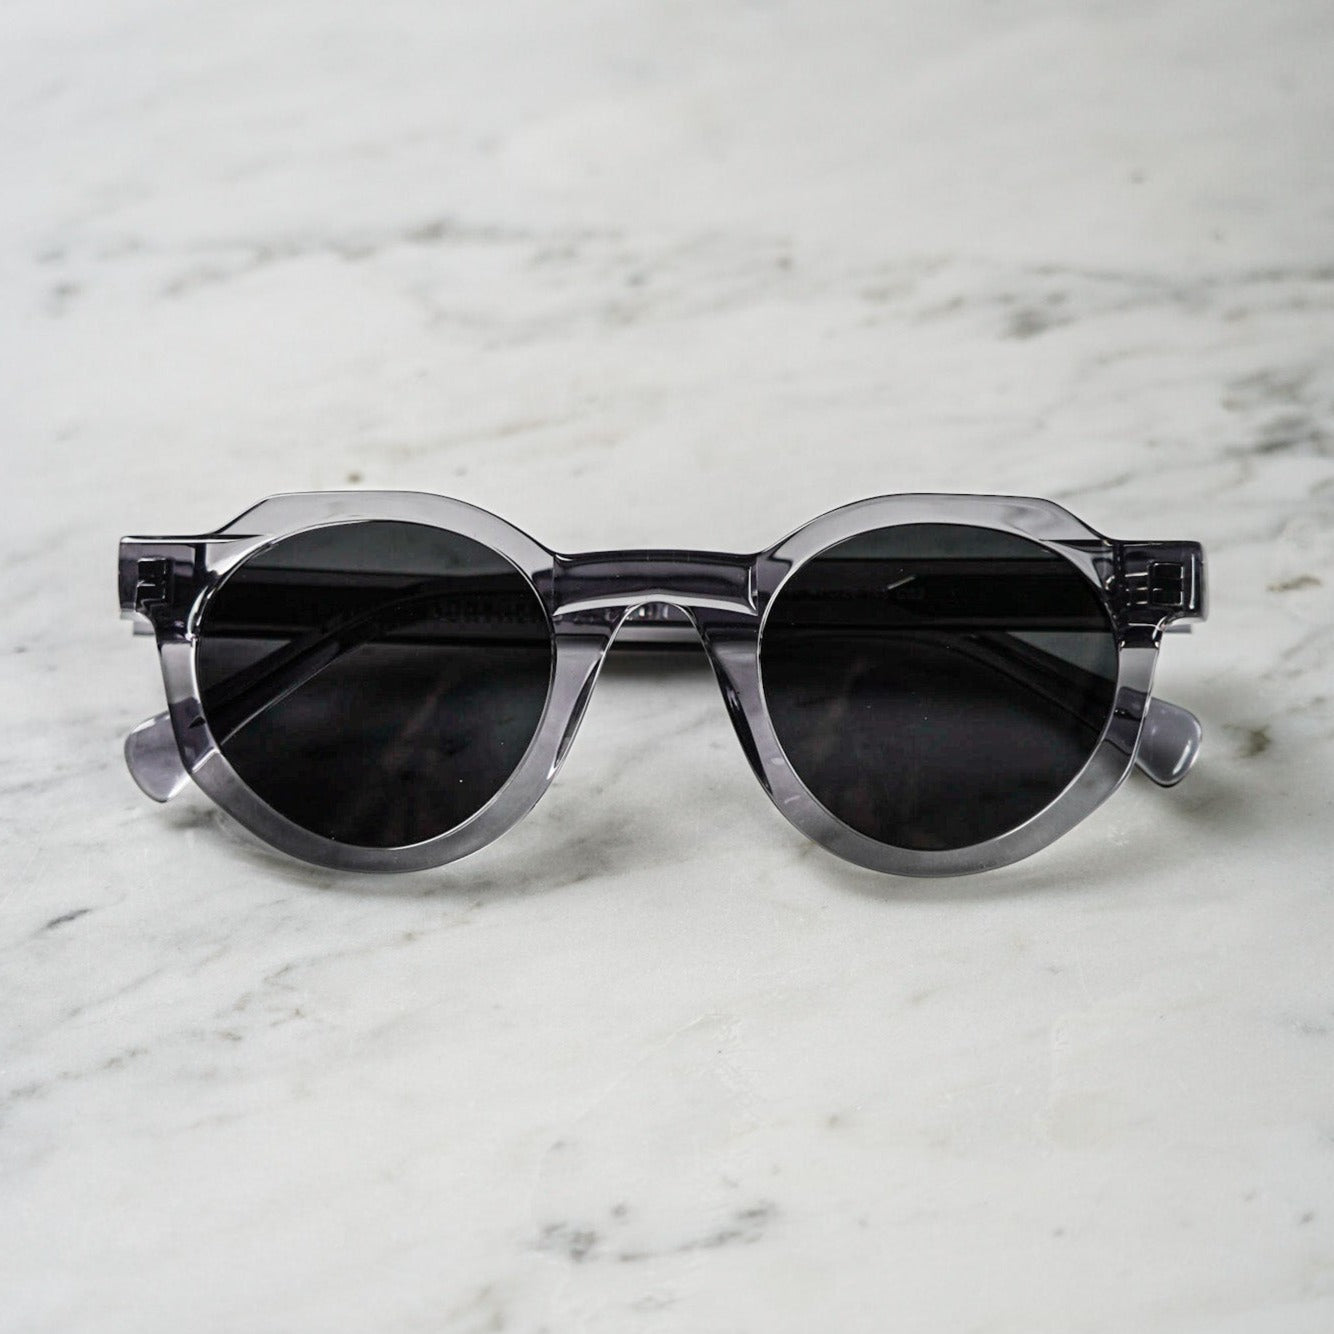 Signature sunglasses - Transparent grey